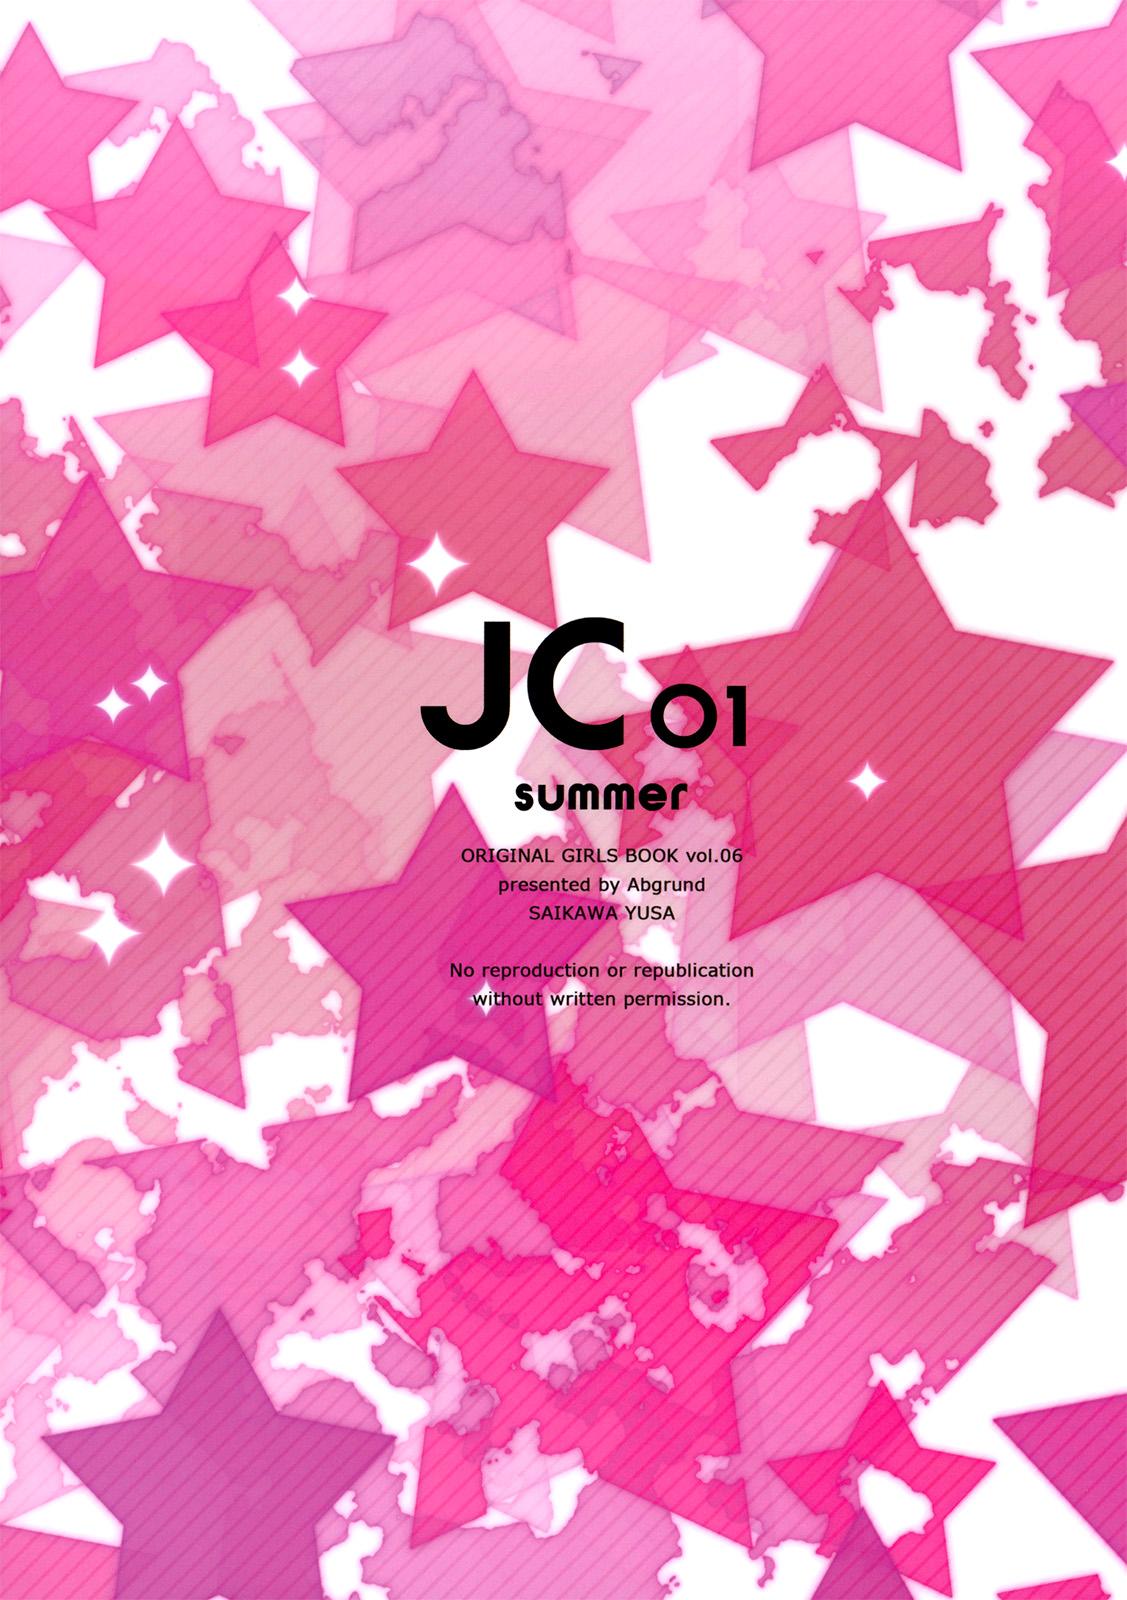 JC01 summer 29